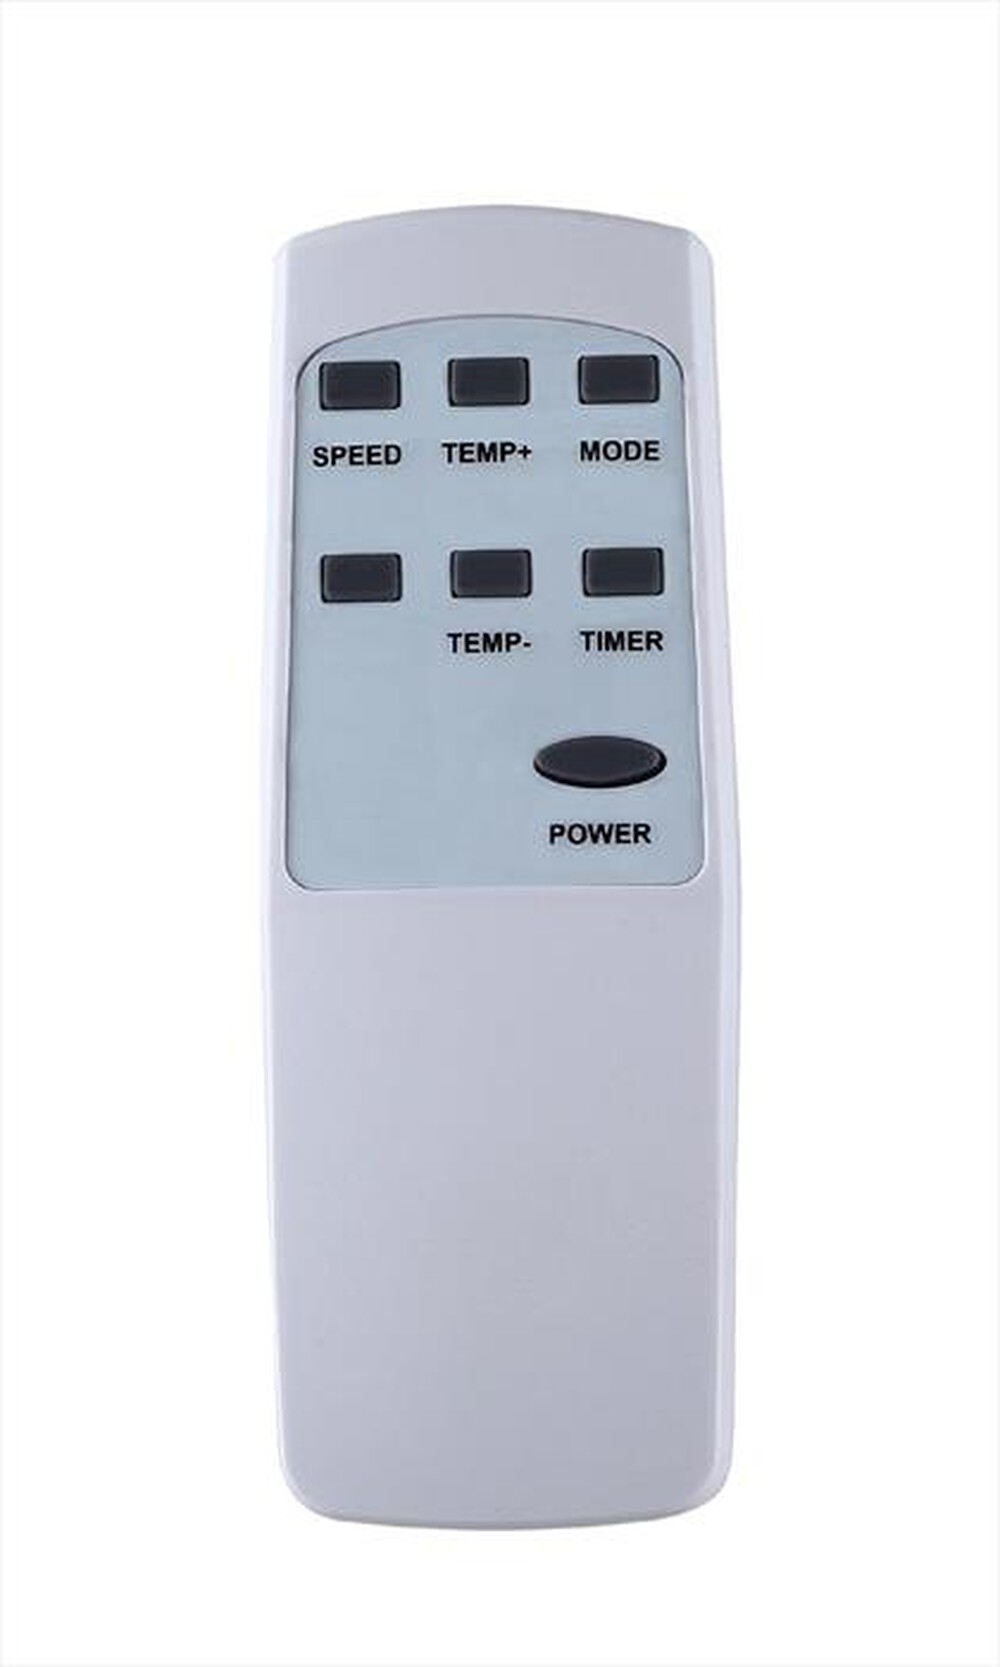 "ZEPHIR - Condizionatore monoblocco ZPC9000-Bianco"